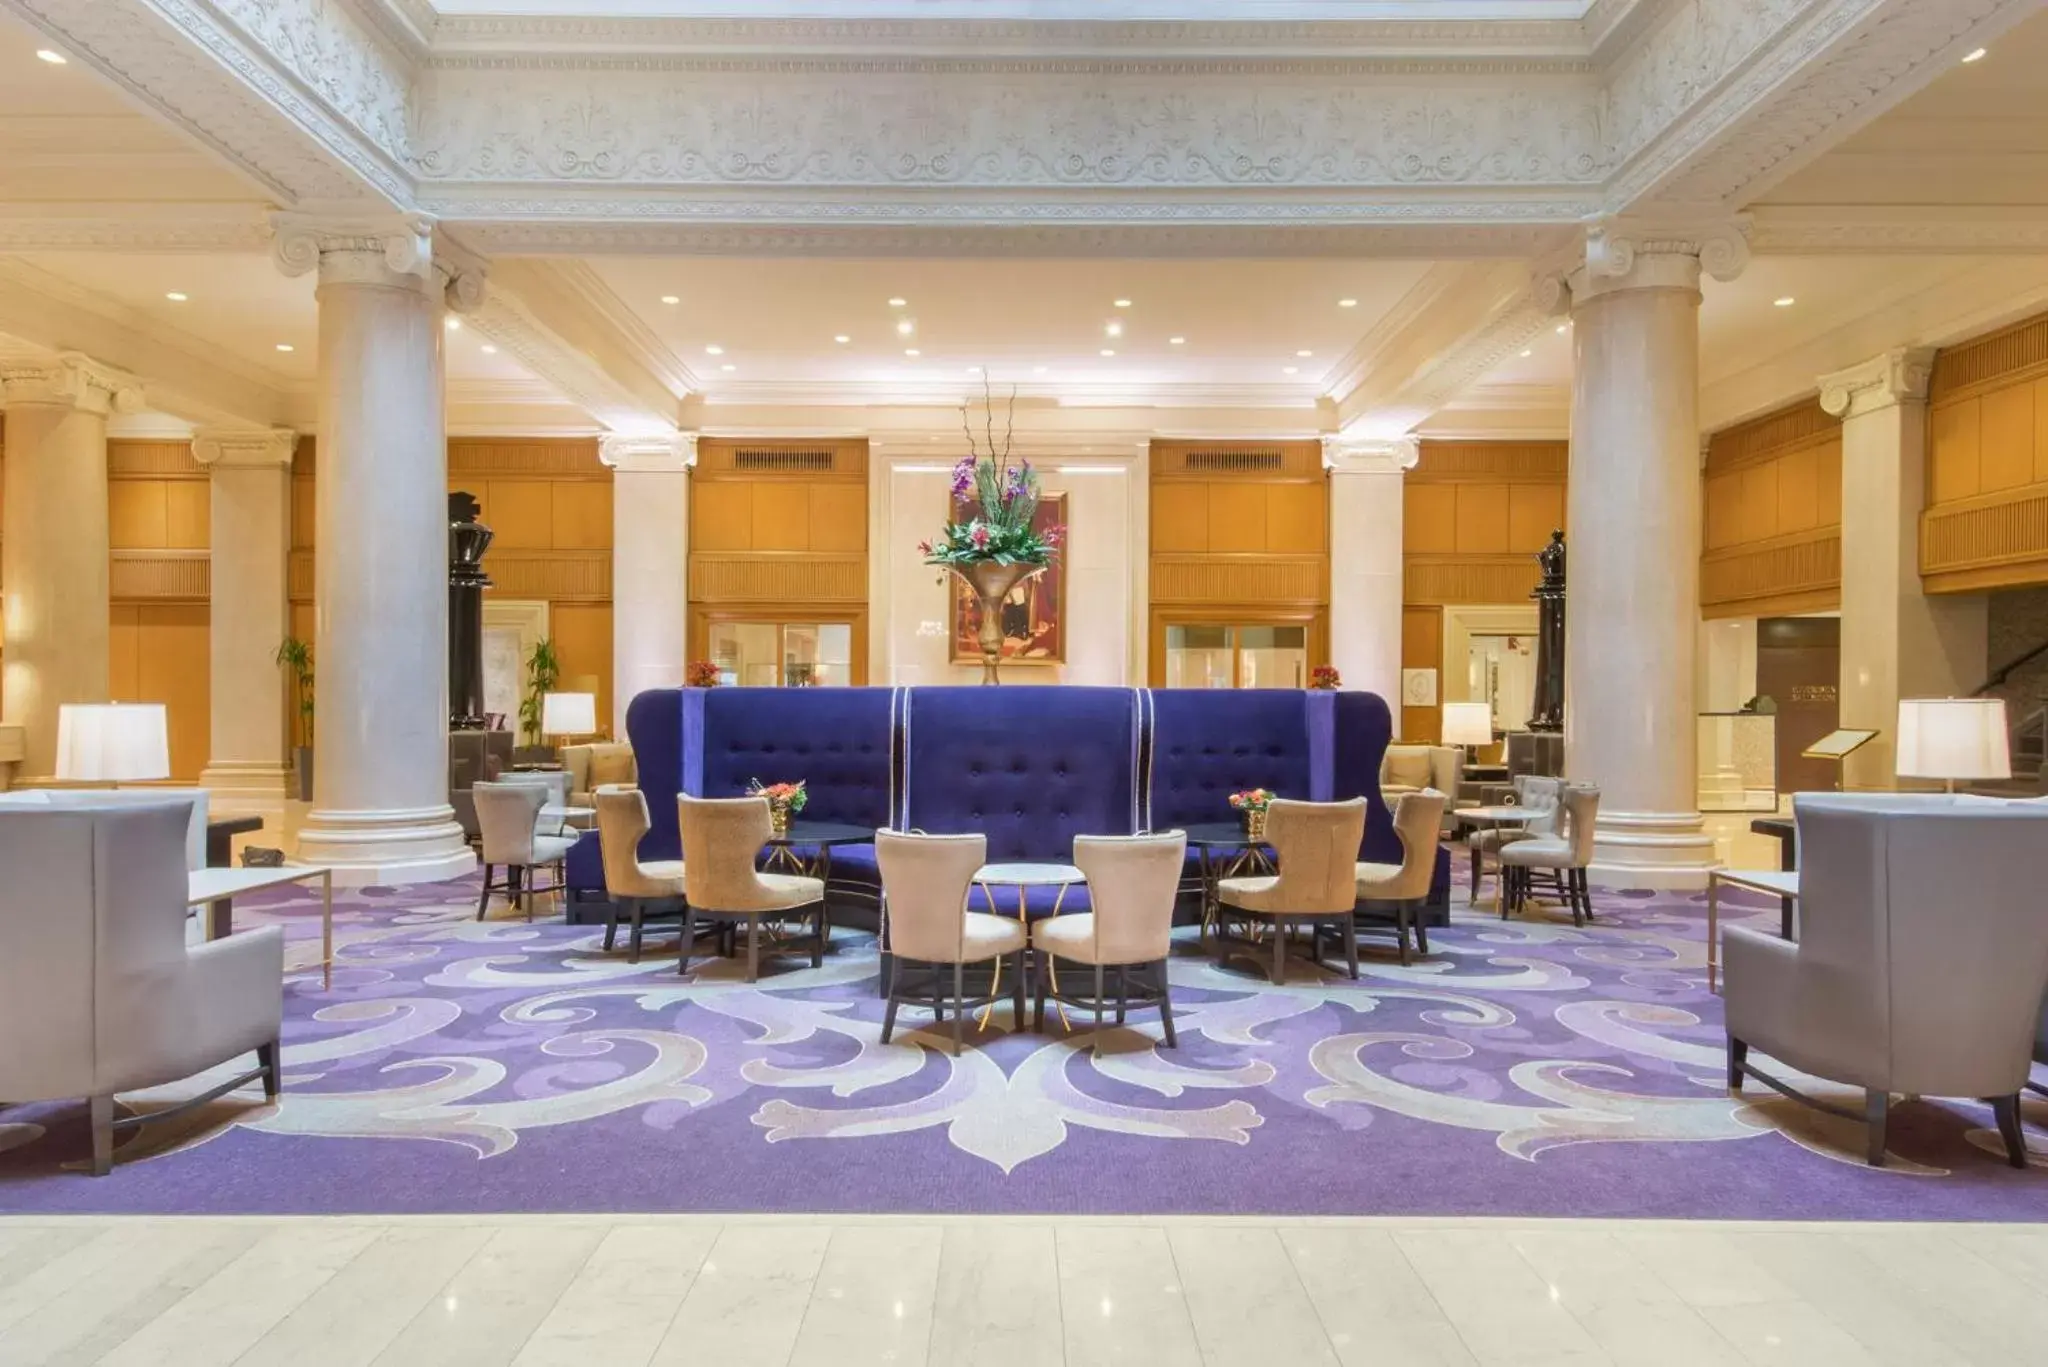 Lobby or reception in The Omni King Edward Hotel